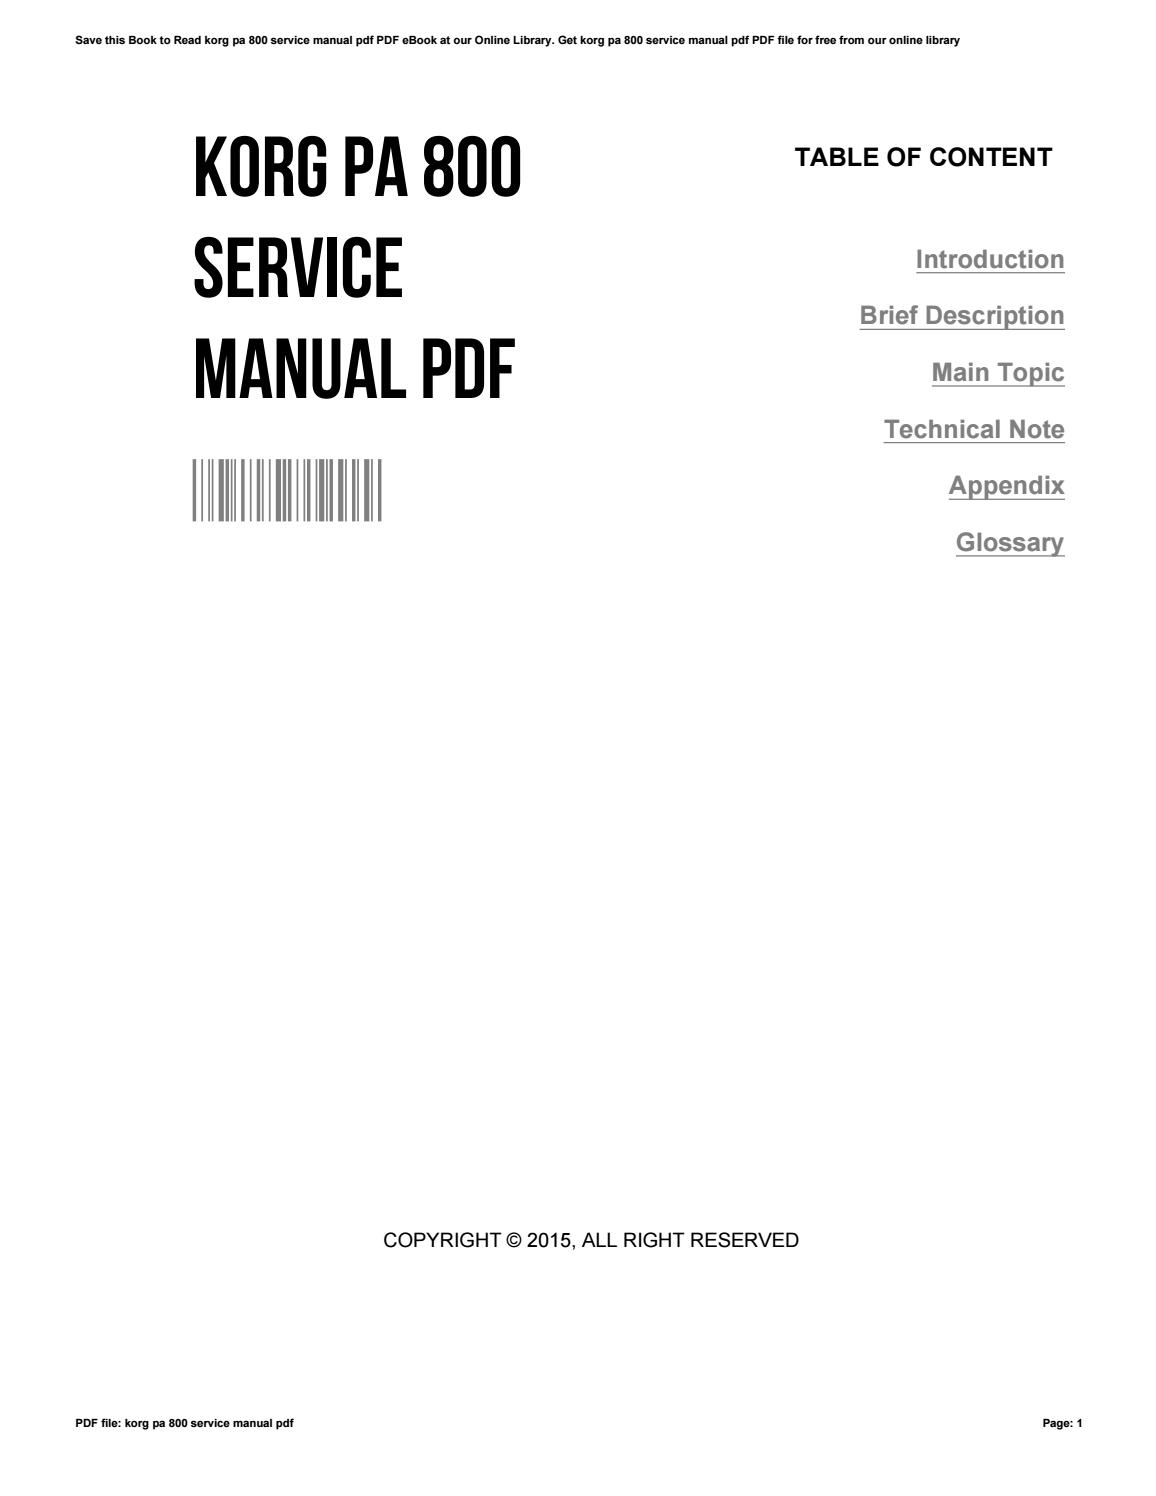 Korg Pa 800 Repair Manual